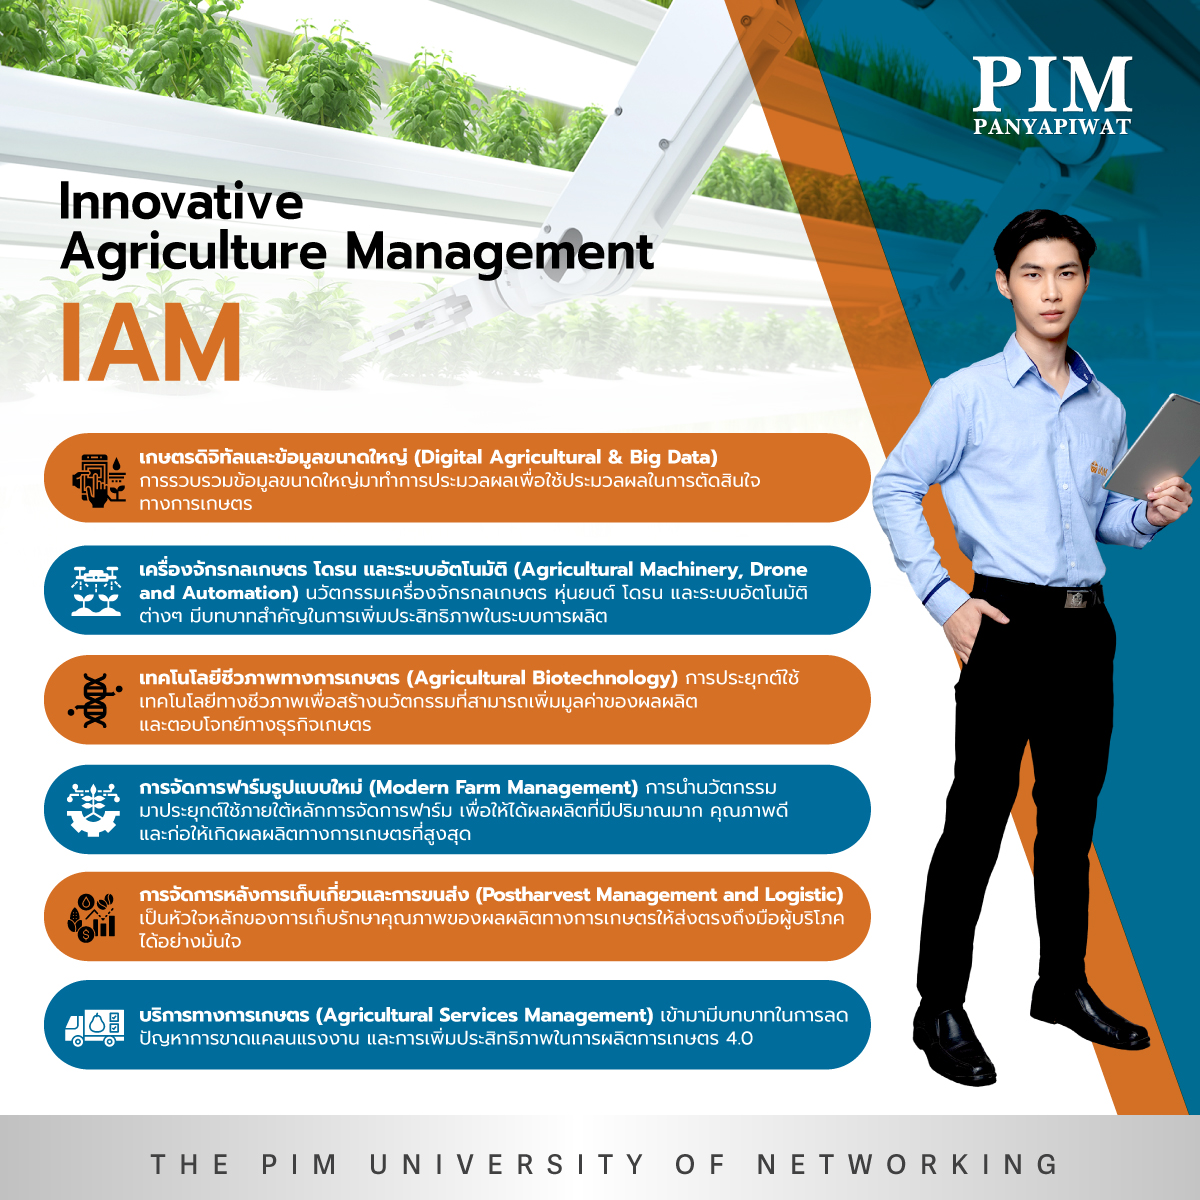 คณะเกษตรนวัตและการจัดการ Innovative Agriculture Management – IAM Caption: คณะเกษตรนวัตและการจัดการ พีไอเอ็ม สอนการทำเกษตรแบบใหม่ให้เป็นธุรกิจที่ประสบความสำเร็จด้วยการจัดการตลอดโซ่อุปทานเกษตรและเสริมความรู้ด้านวิทยาศาสตร์เกษตรด้วยนวัตกรรม 6 ด้าน